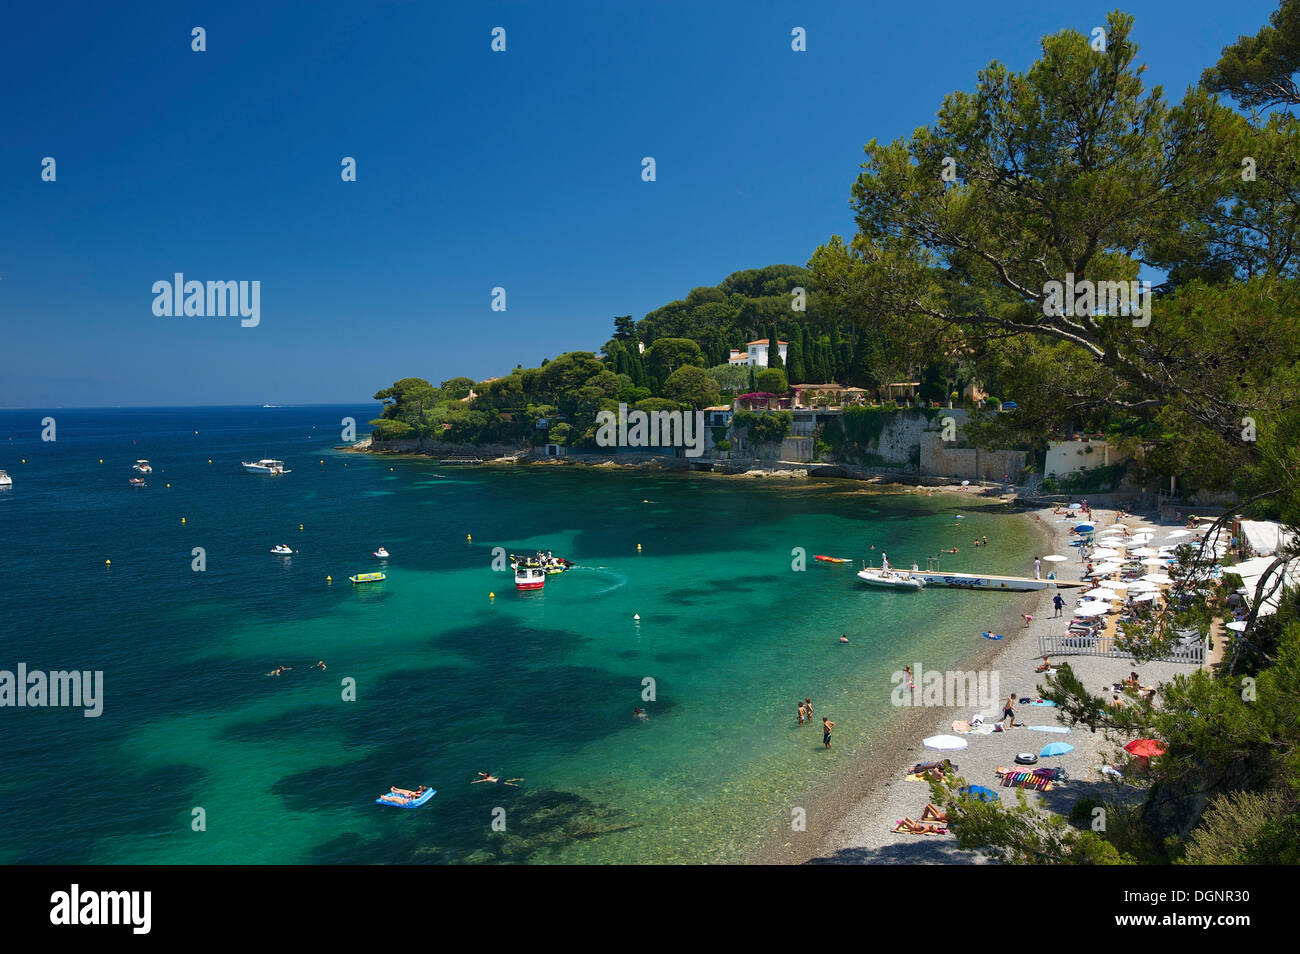 Paloma Plage beach, Saint Jean Cap Ferrat, Département Alpes-Maritimes,  Region Provence-Alpes-Côte d'Azur, France Stock Photo - Alamy